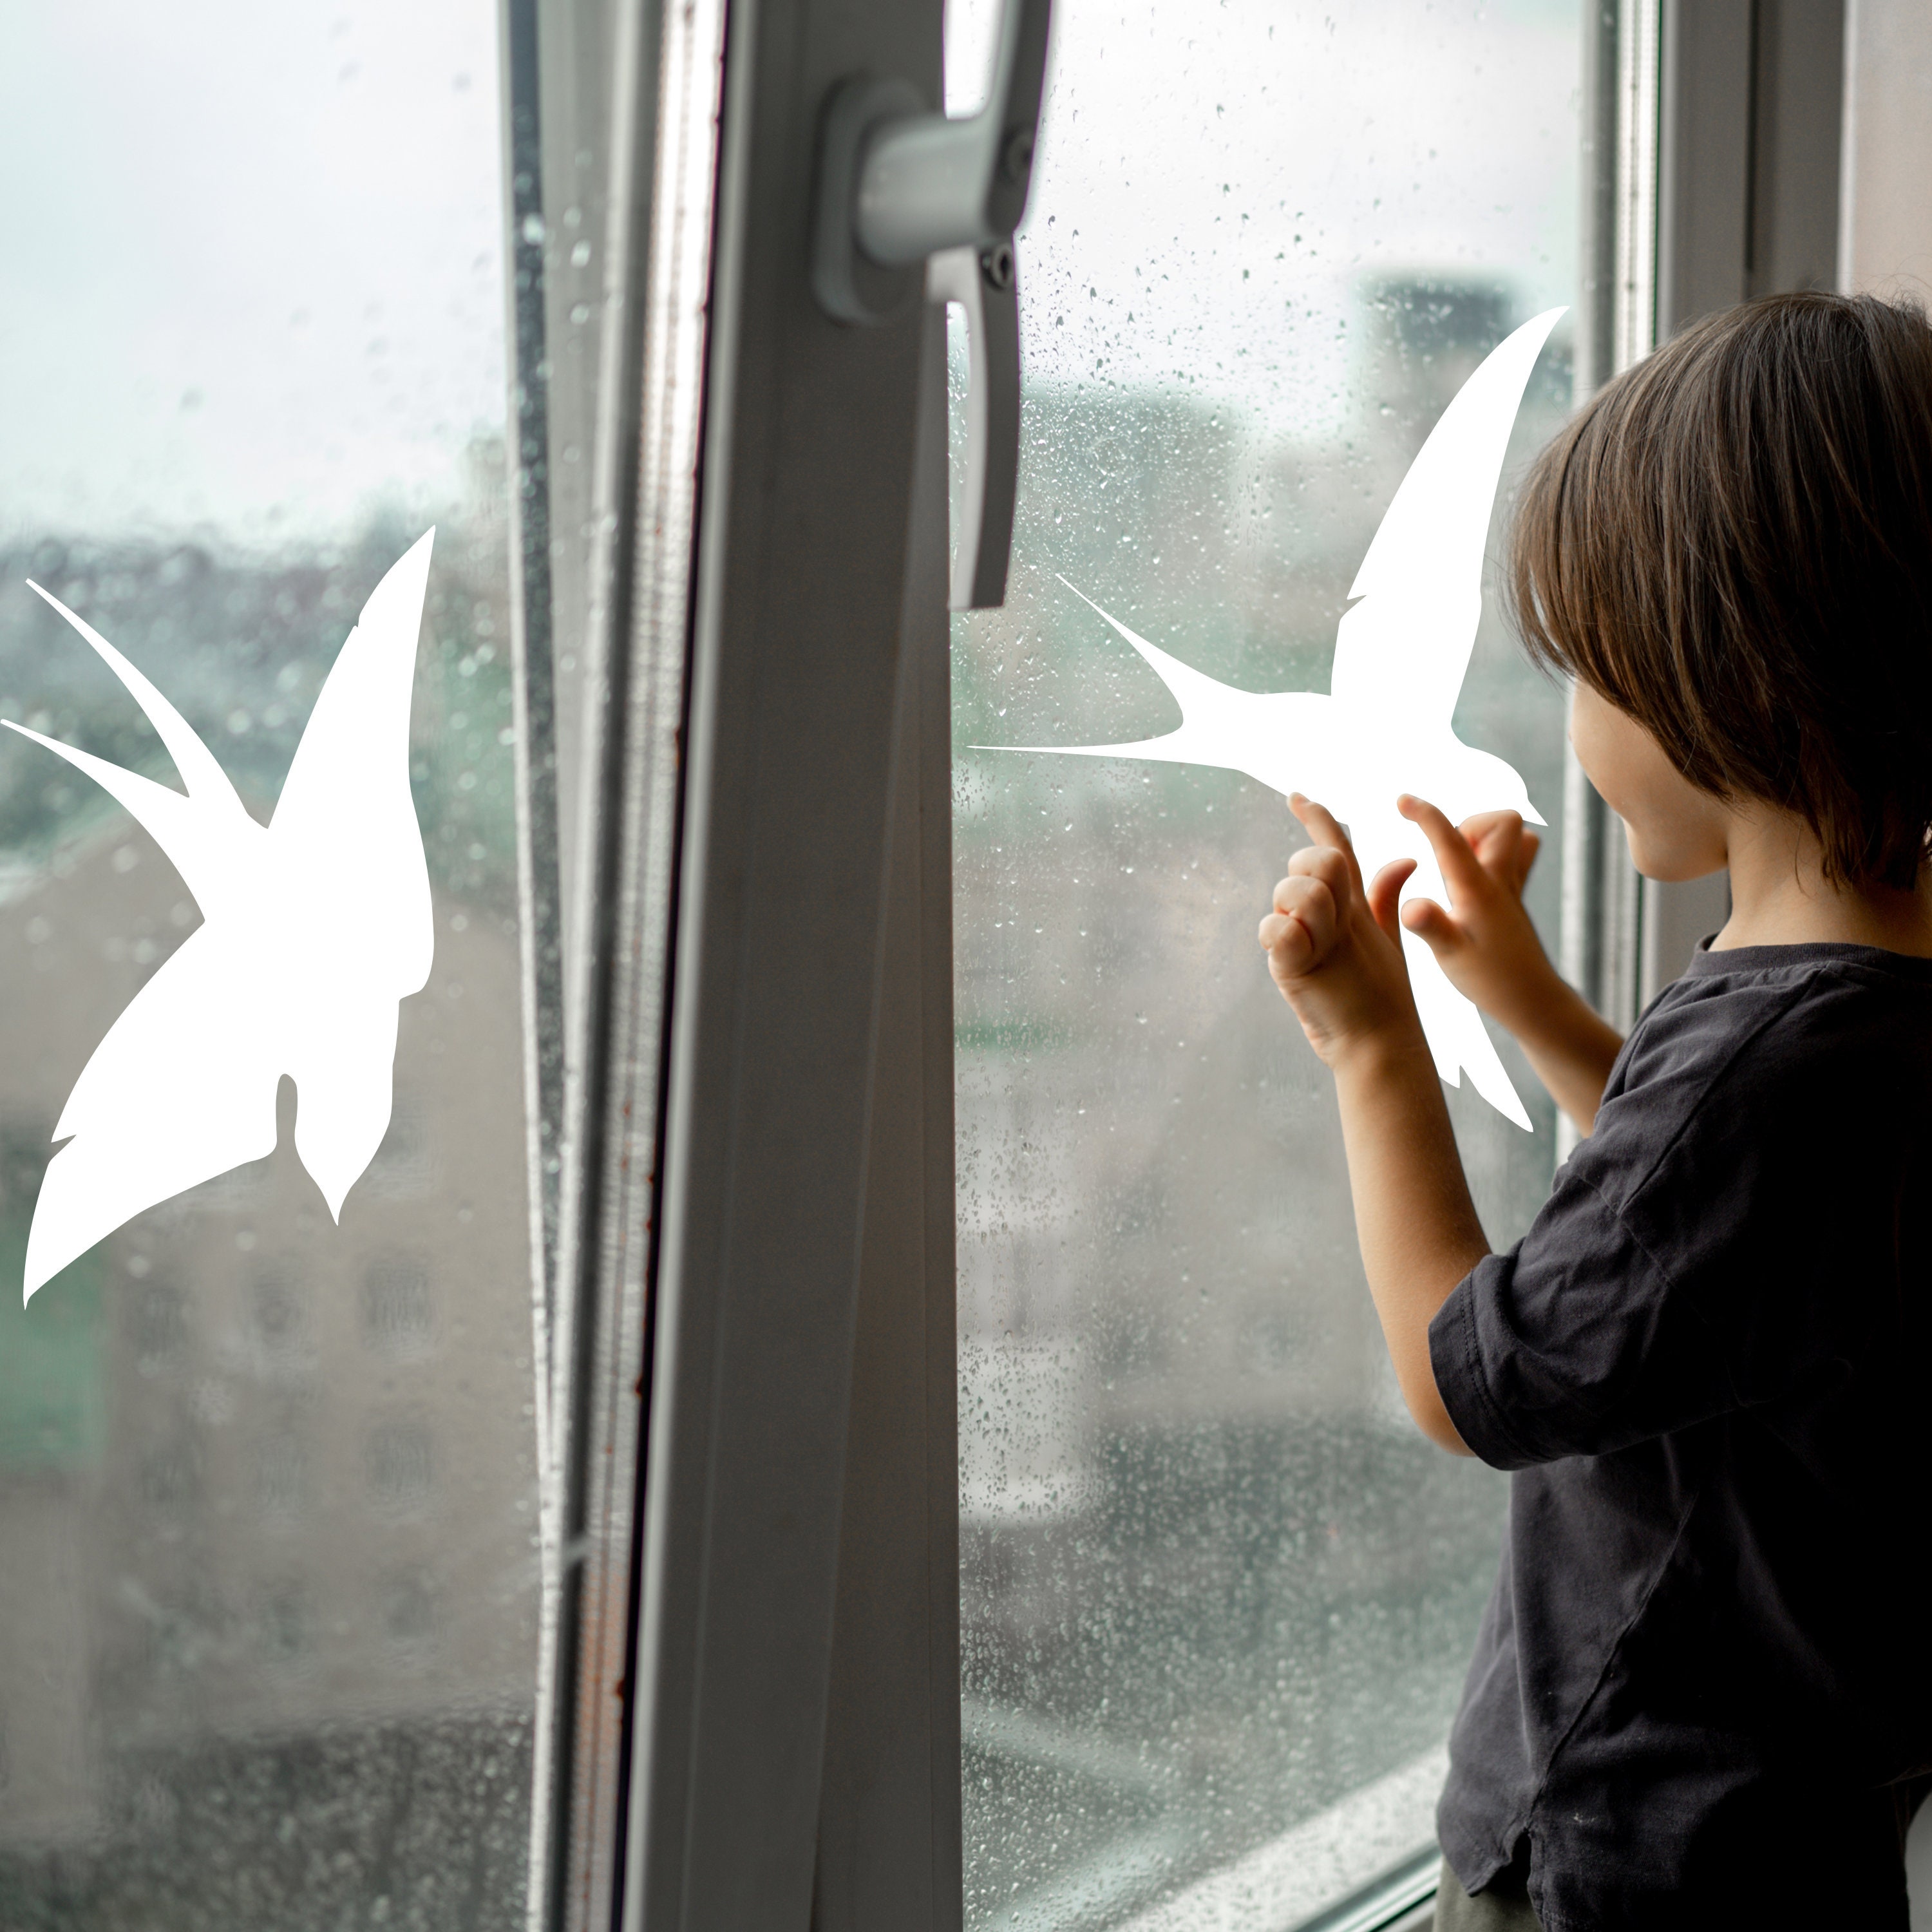 Anti-Vogel-Kollision Aufkleber auf einem Fenster, um Vögel zu